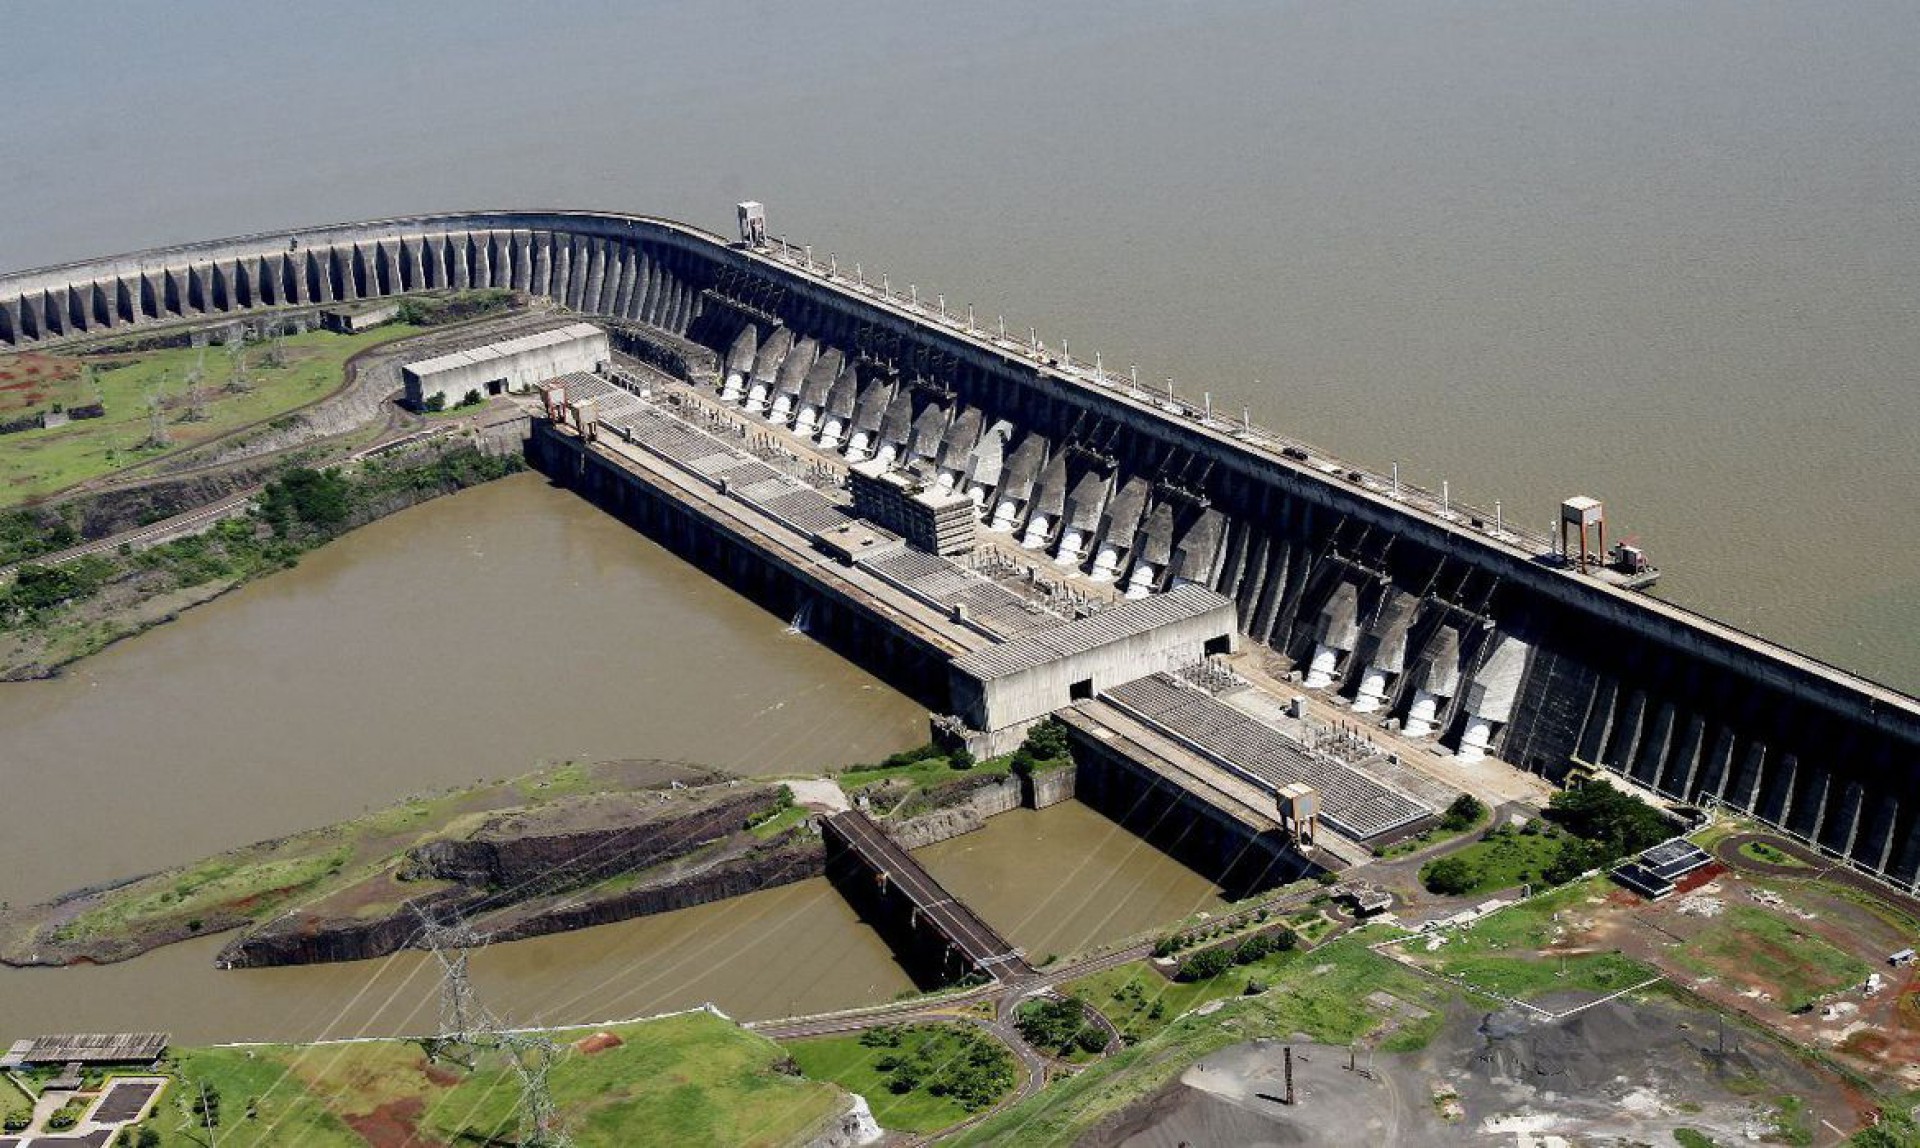 Barragem de Itaipu, hidroelétrica no rio Paraná, entre Brasil e Paraguai. O povo Avá-Guarani vive nos arredores do lago criado pela construção da hidrelétrica (Foto: Caio Coronel/Itaipu)